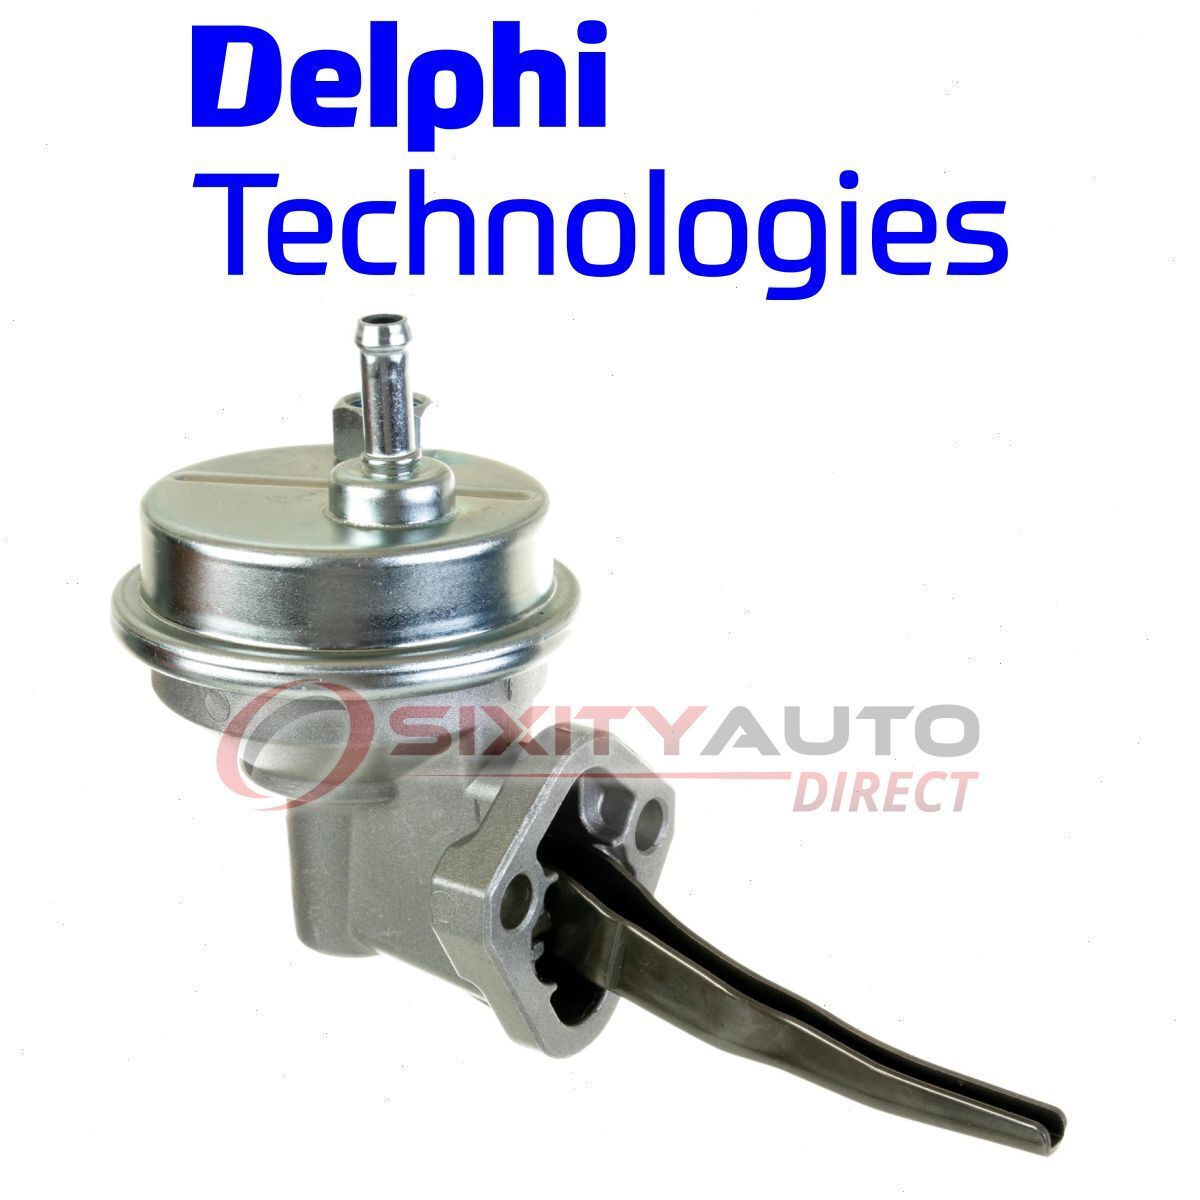 Delphi Mechanical Fuel Pump for 1977-1984 Oldsmobile Cutlass Supreme 3.8L V6 ip